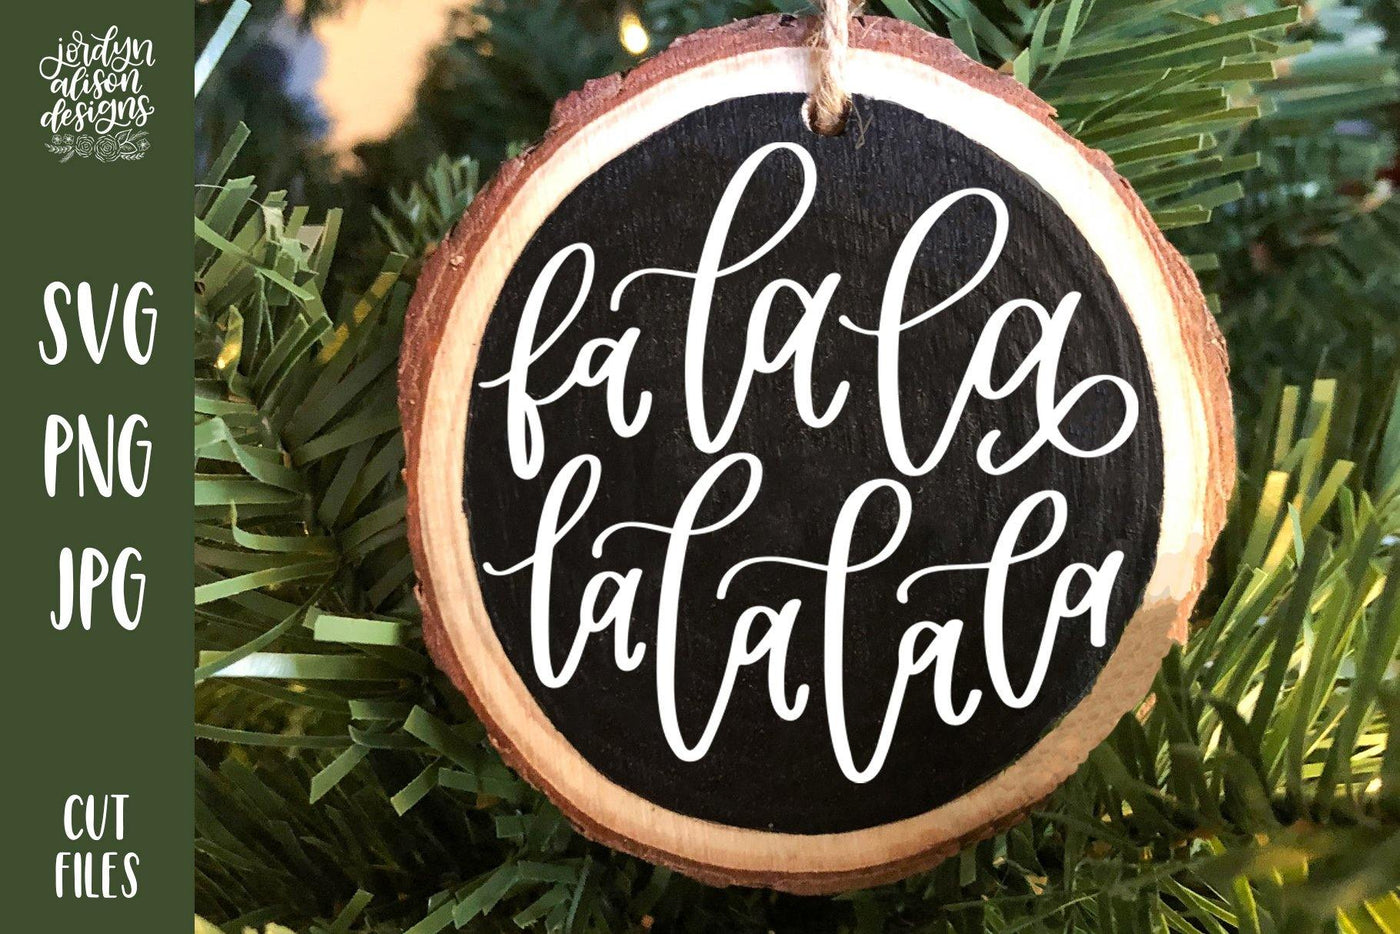 Handwritten text "Fa La La" on Round Christmas Ornament. 